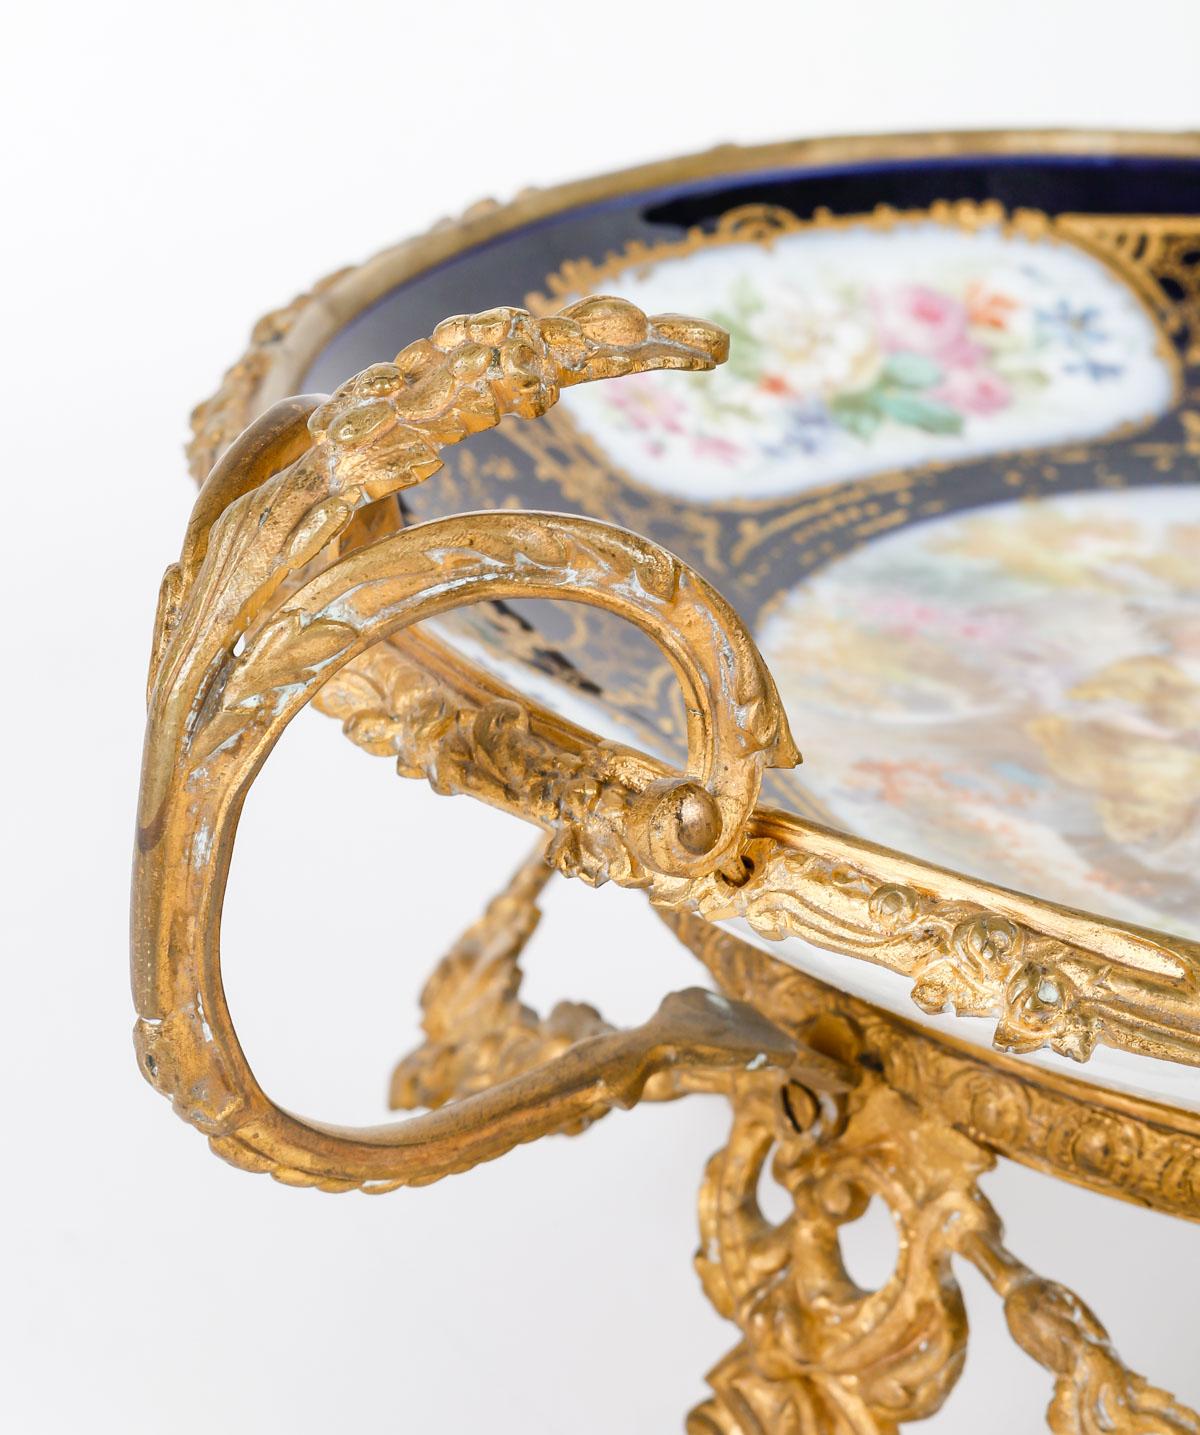 Coupe en porcelaine de Sèvres et monture en bronze doré, Napoléon III.

Coupe en porcelaine de Sèvres du XIXe siècle et monture en bronze doré, époque Napoléon III.
h : 17cm, l : 37cm, p : 30cm

